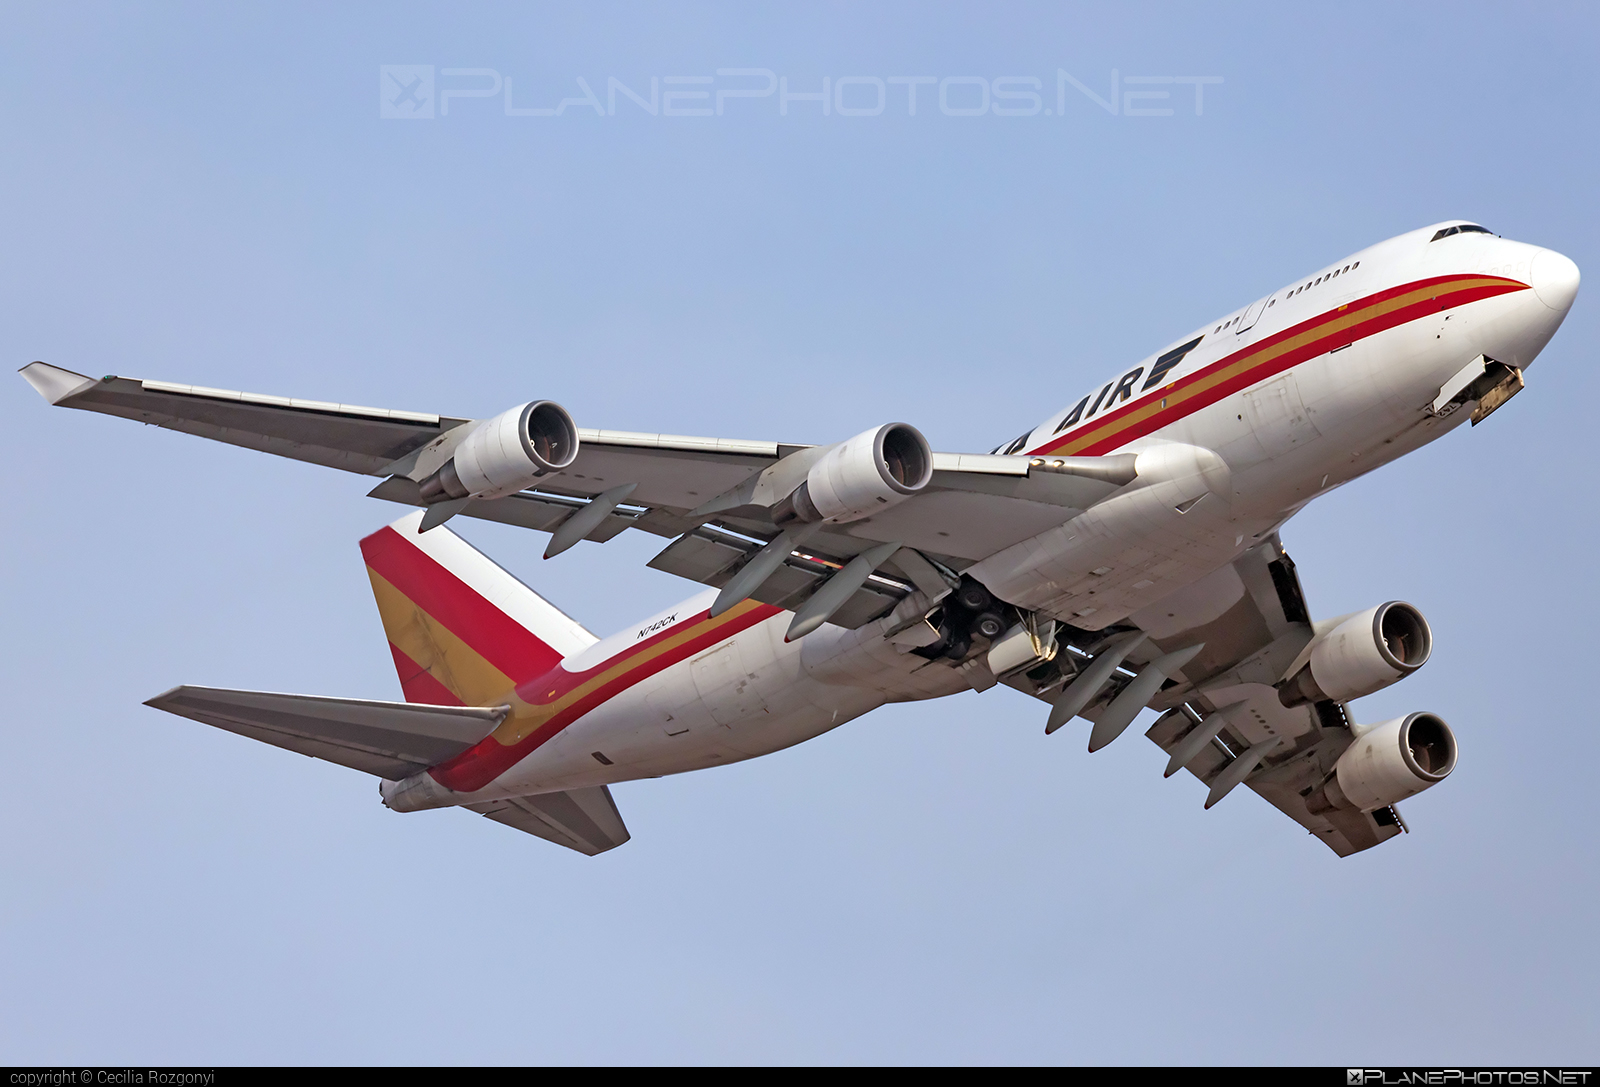 Boeing 747-400BCF - N742CK operated by Kalitta Air #b747 #b747bcf #boeing #boeing747 #boeingconvertedfreighter #jumbo